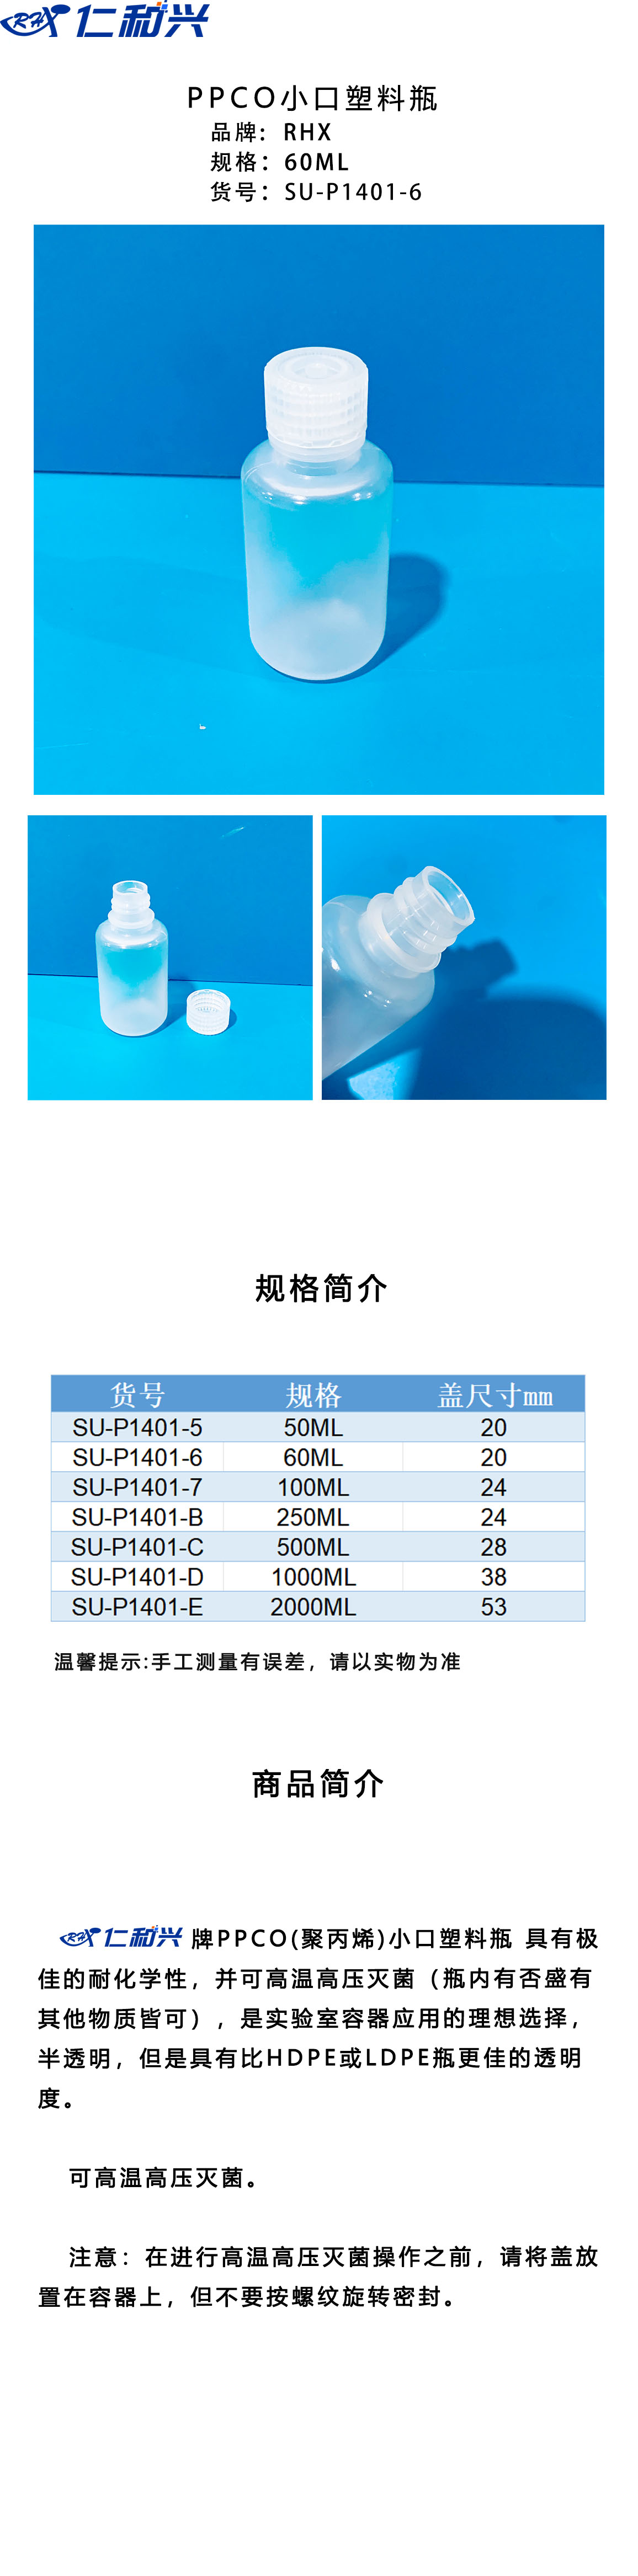 SU-P1401-6 长图模板.jpg